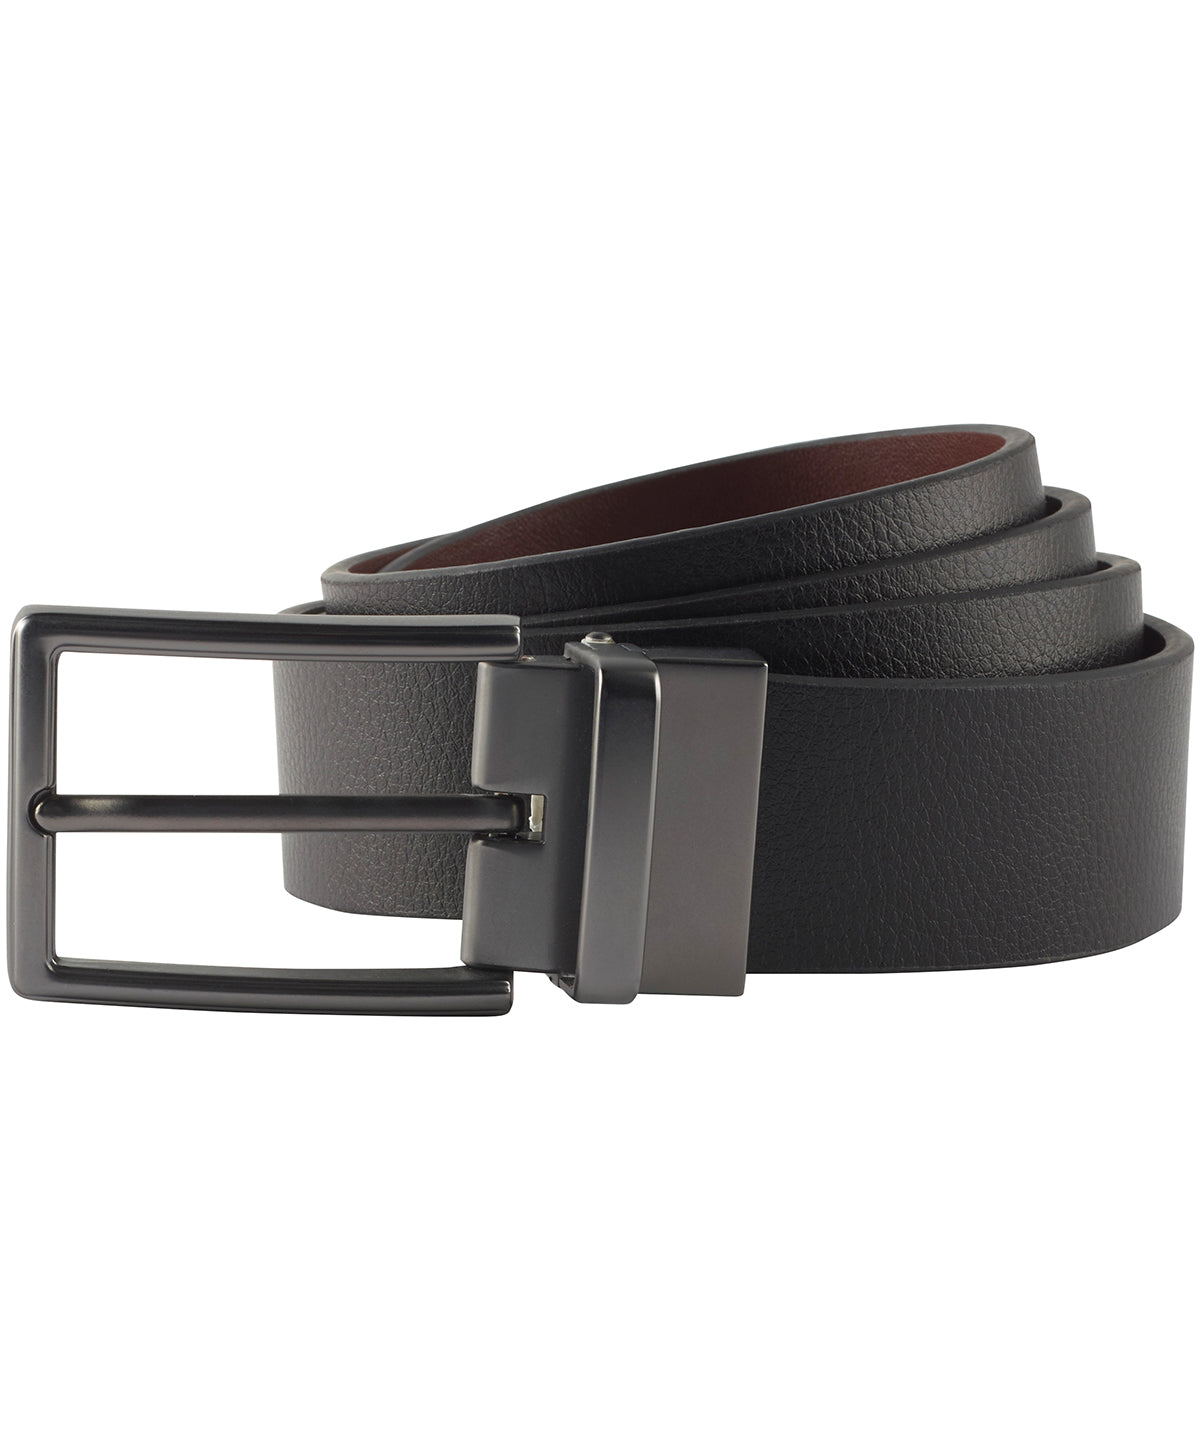 Belti - Men's Two-way Leather Belt